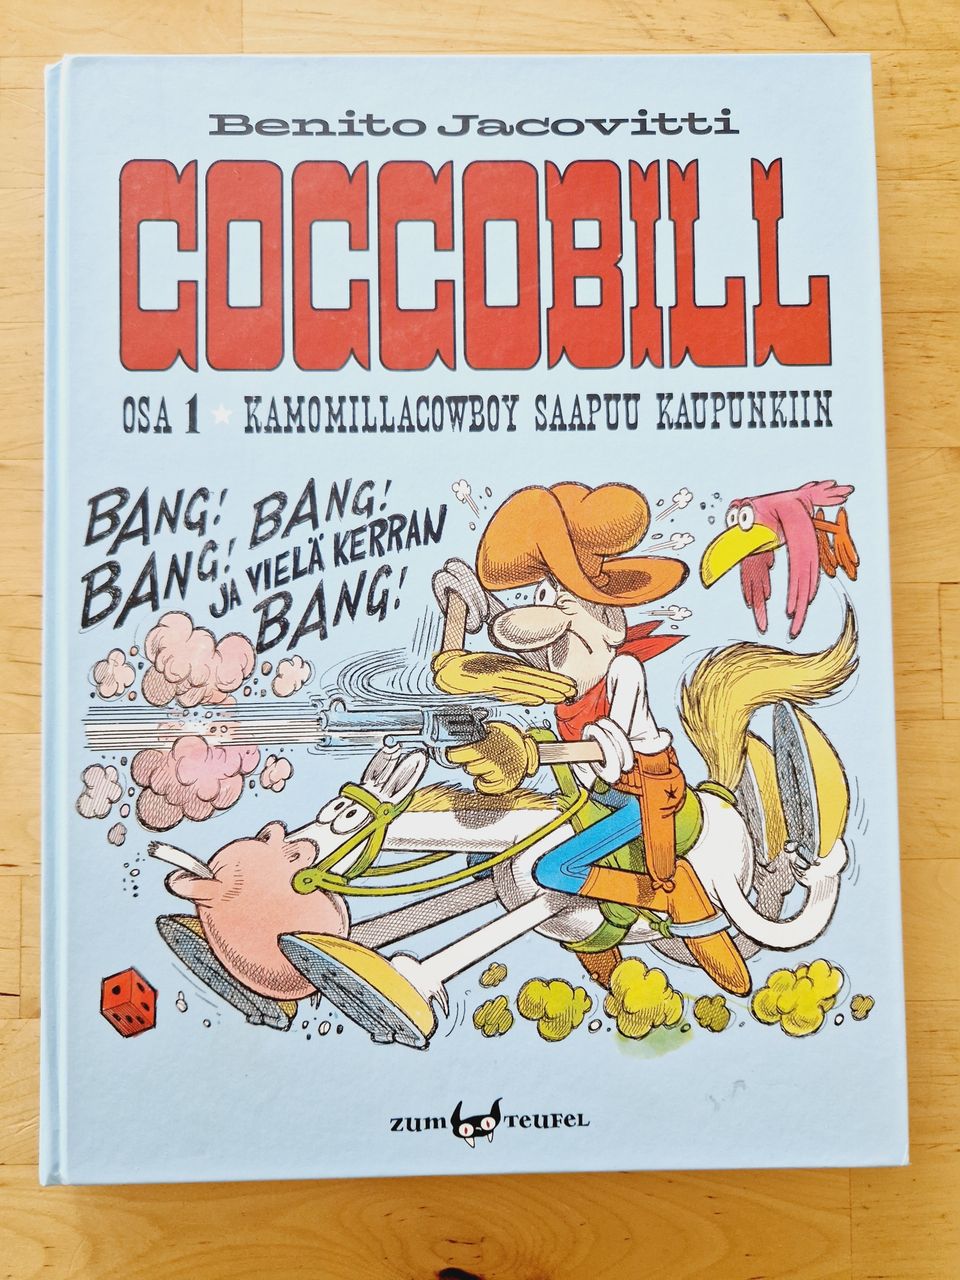 Cocco Bill Osa 1: Kamomillacowboy Saapuu Kaupunkiin